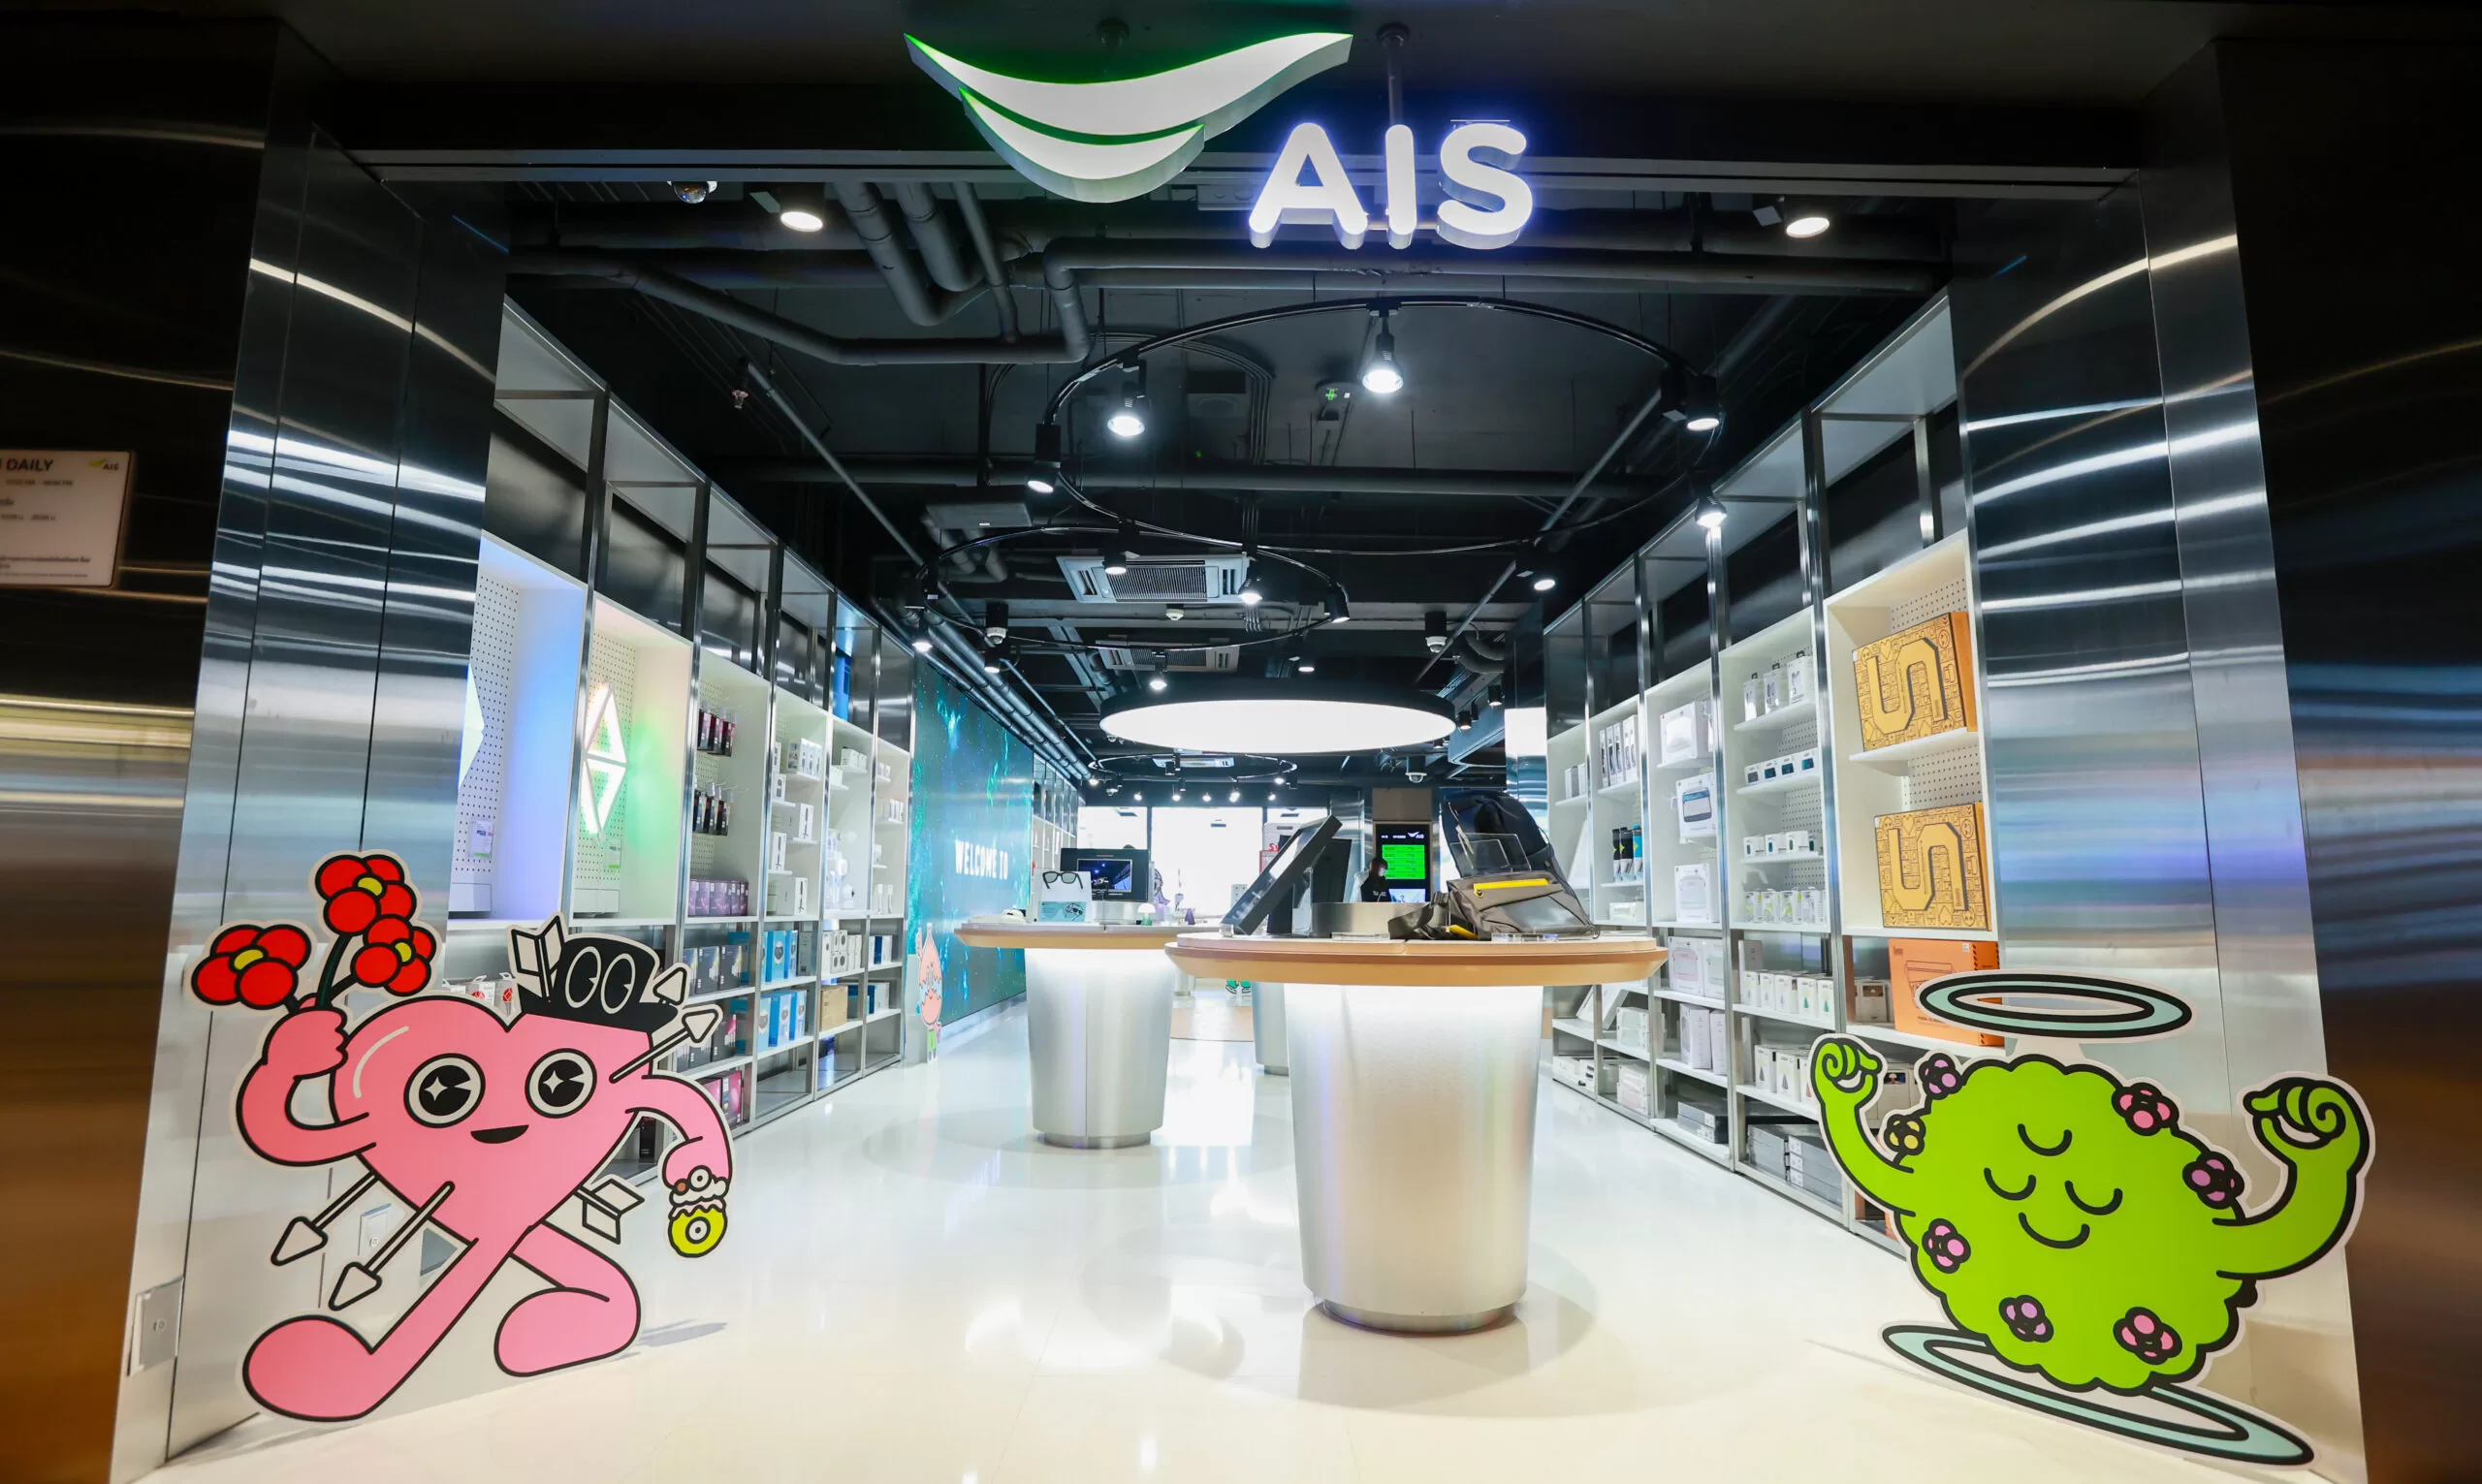 IMG 7242 2 scaled | AIS | พาไปดู AIS Flagship Store แห่งใหม่ ใจกลางสยาม ออกแบบเพื่อคนรุ่นใหม่ในพื้นที่ 2 ชั้น